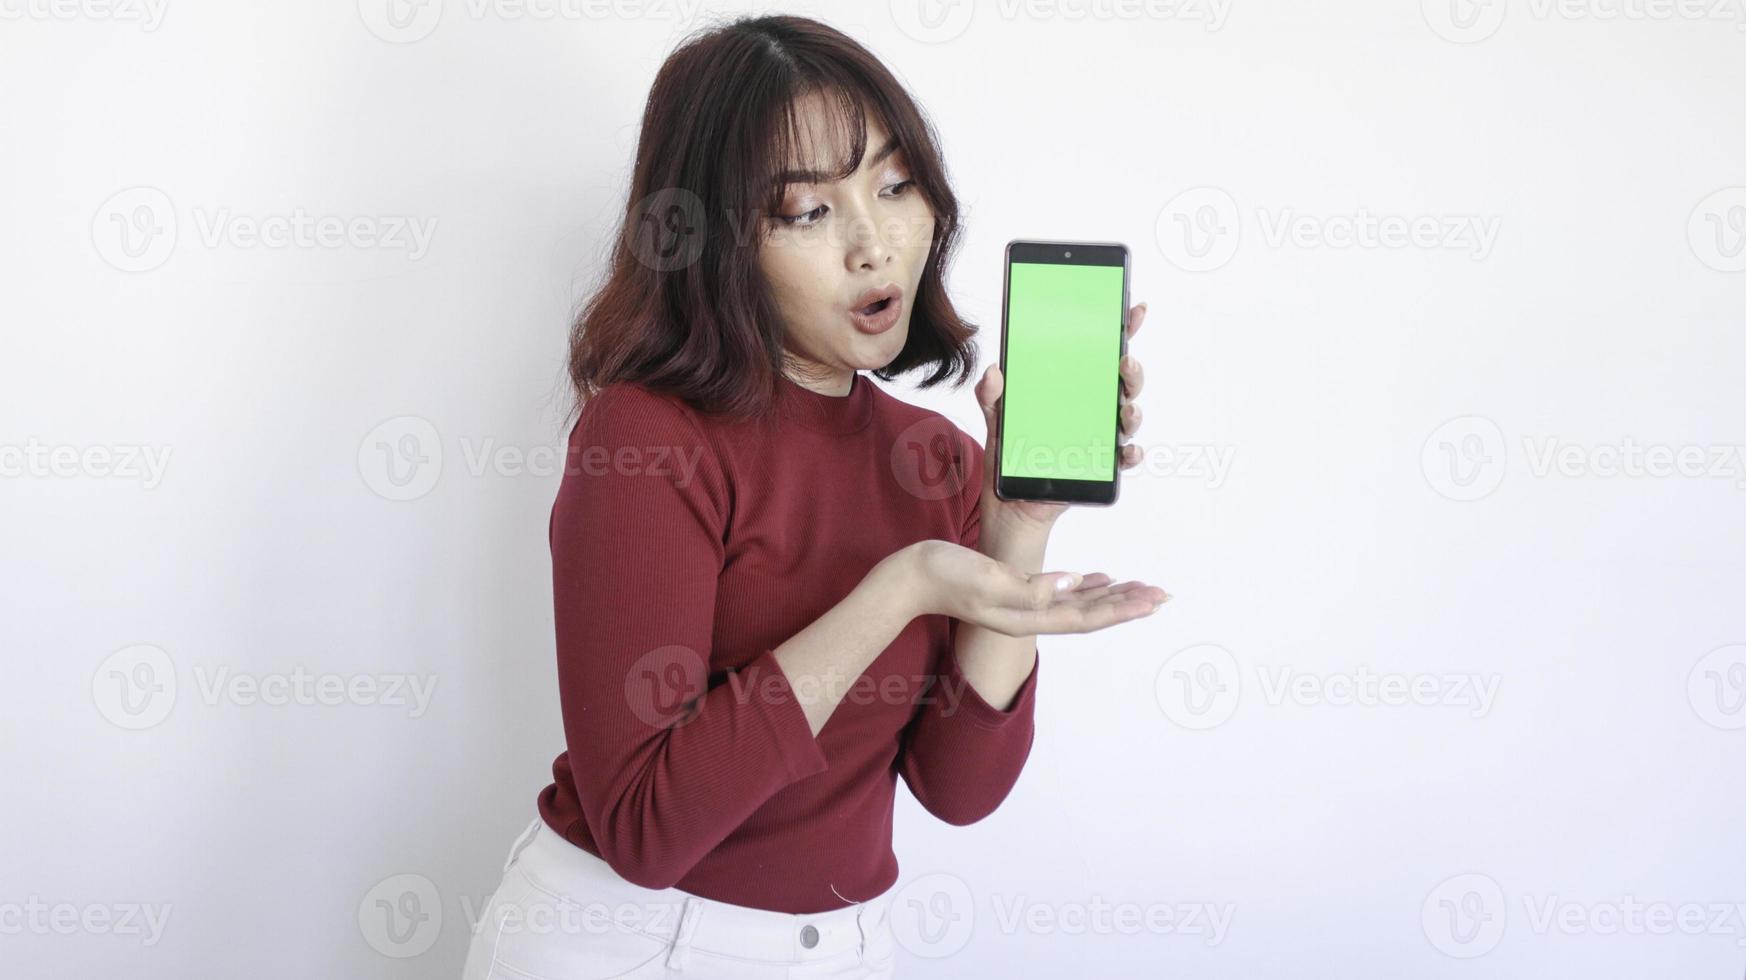 Choc belle fille asiatique point sur téléphone à écran vert sur fond blanc photo